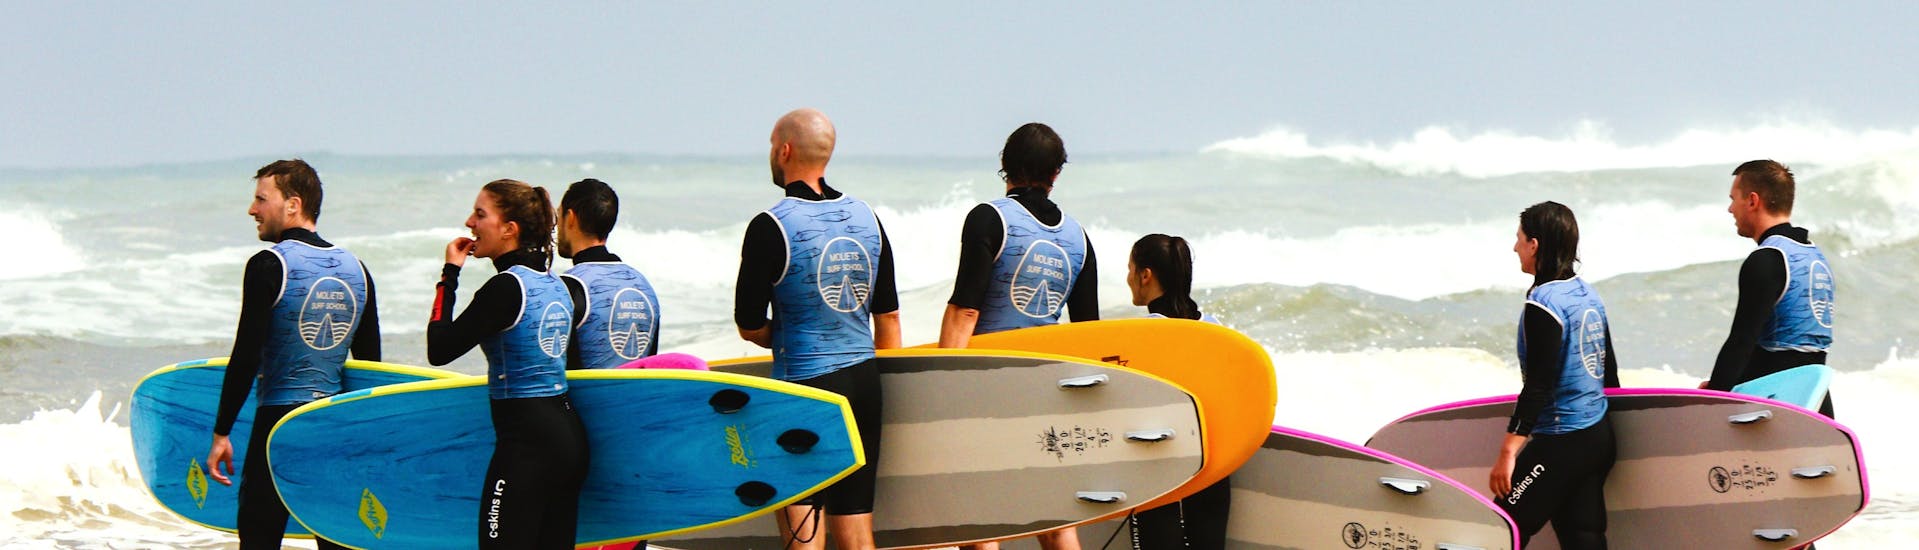 Kinder am Strand von Moliets während ihrer Surfstunde mit der Moliets Surf School.